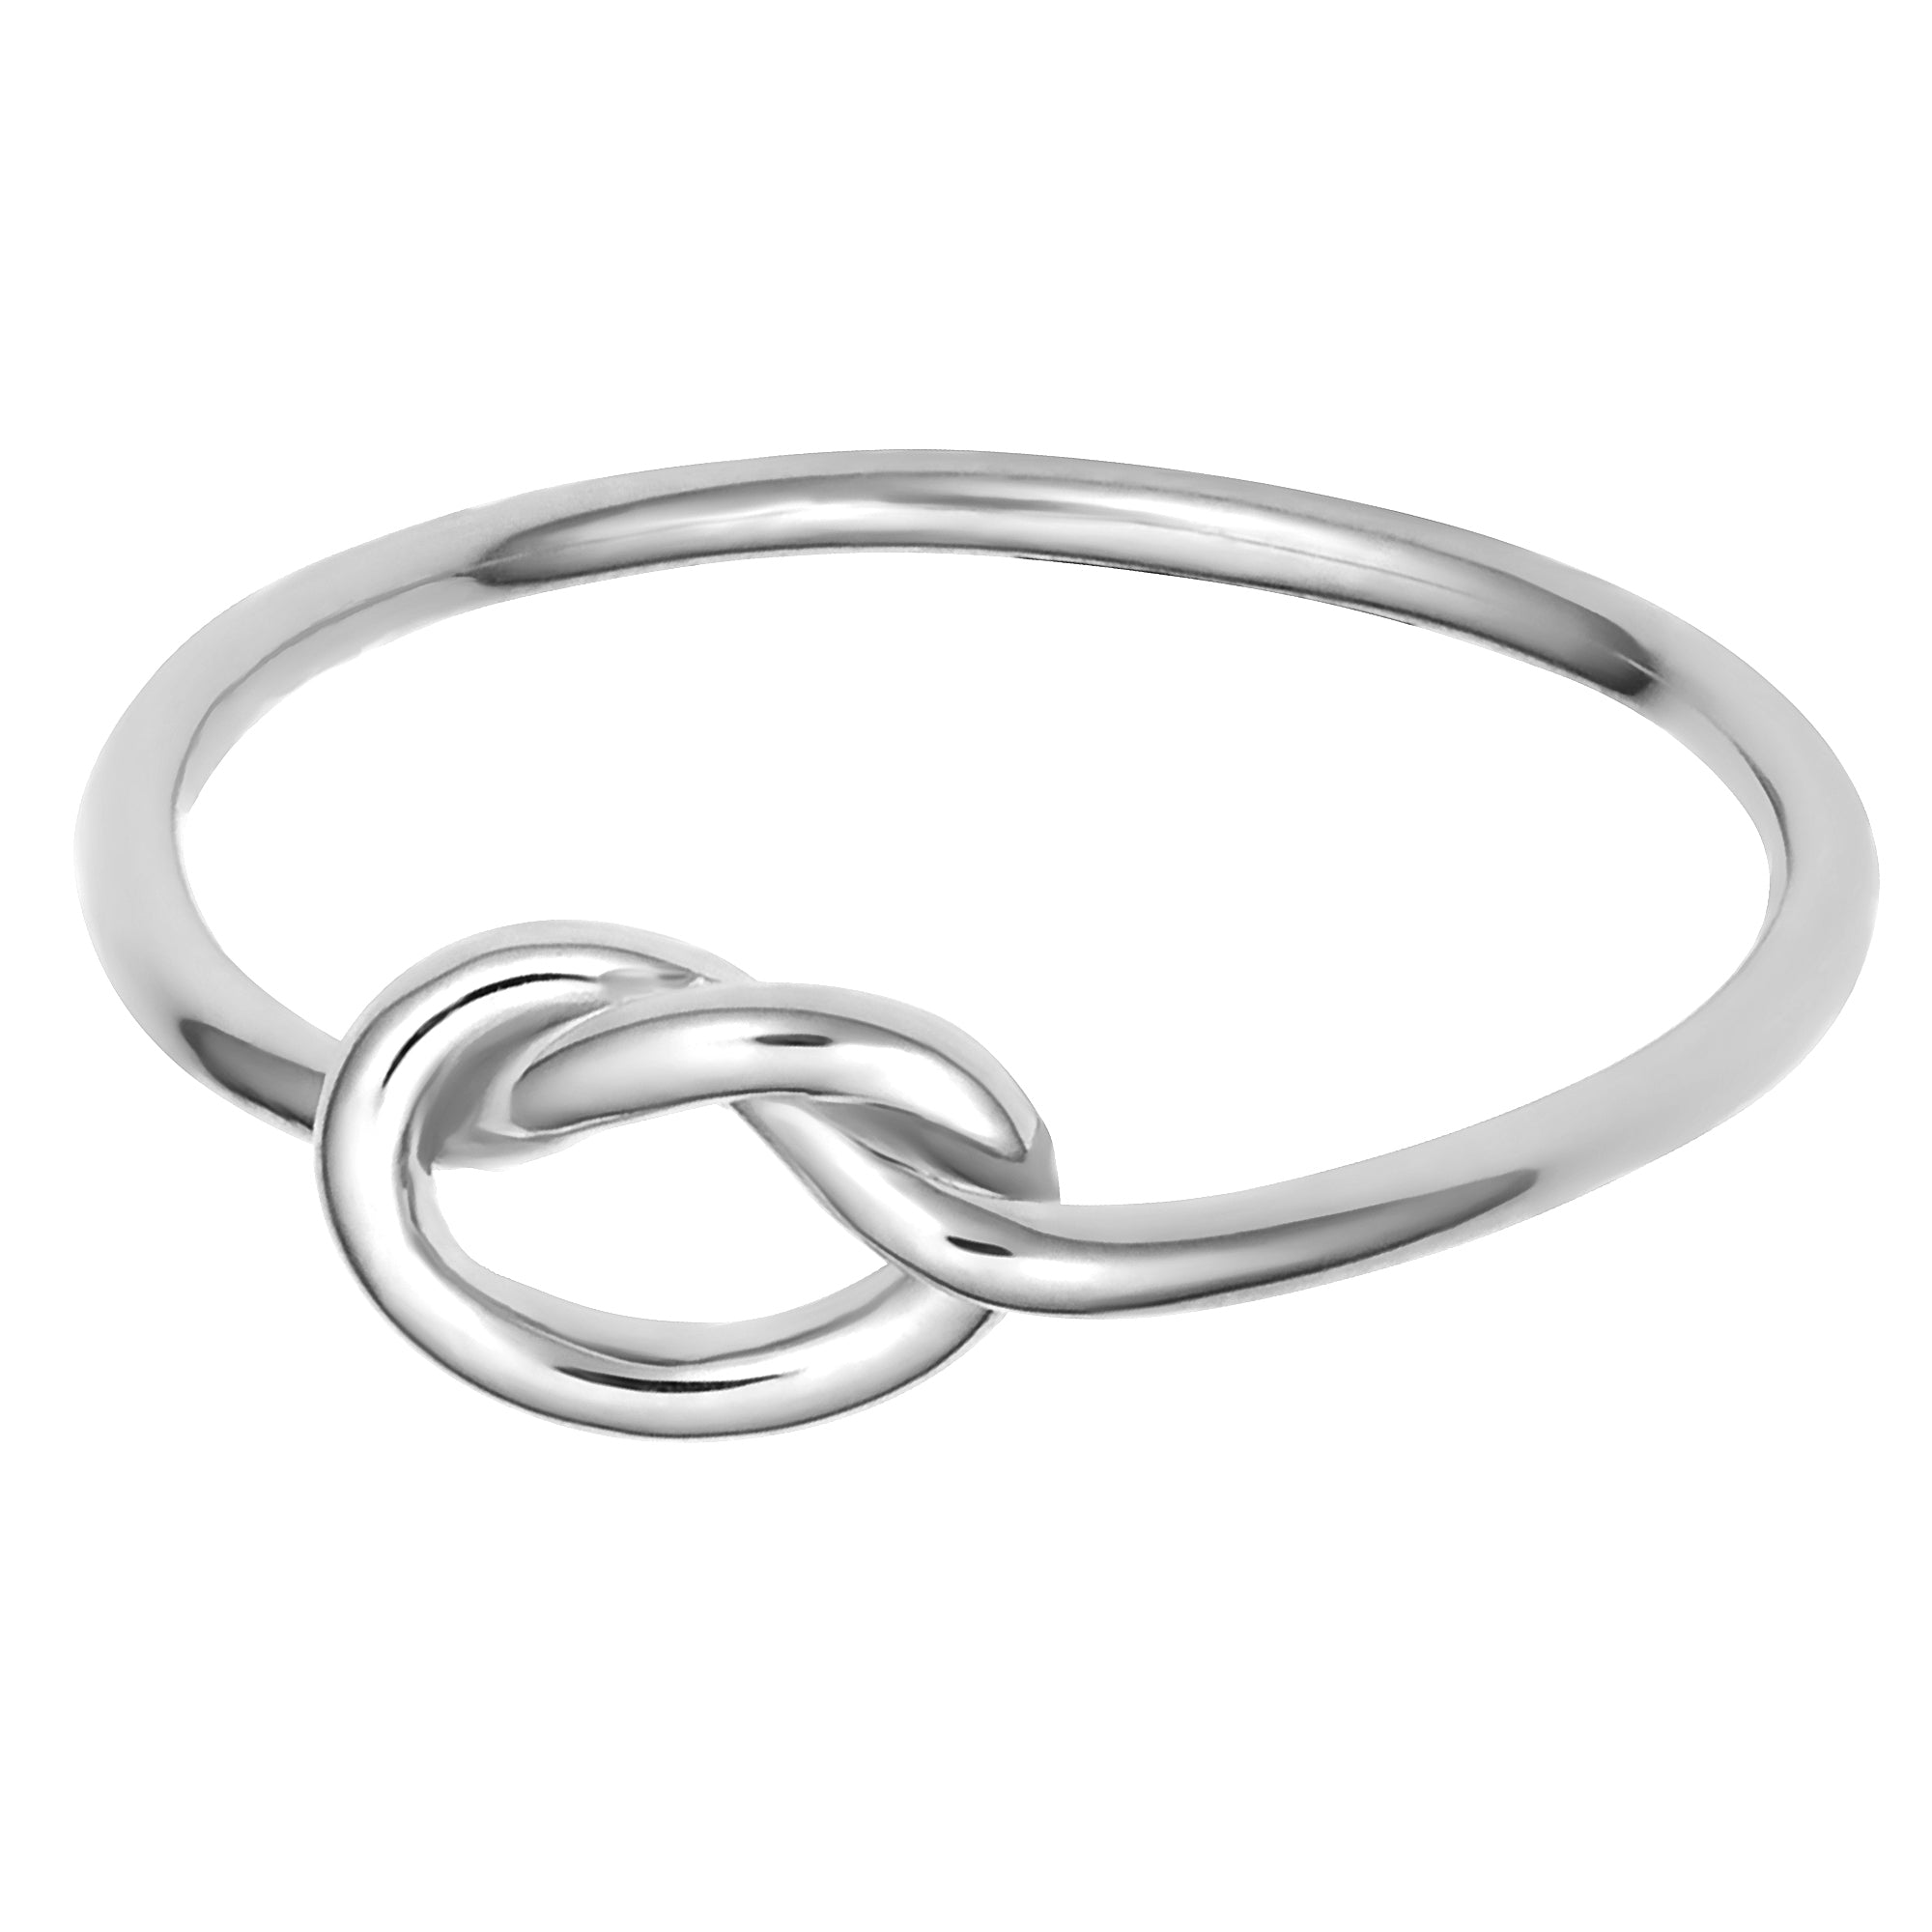 Liebesknoten-Ring aus 14-karätigem Weißgold, feiner Designerschmuck für Männer und Frauen